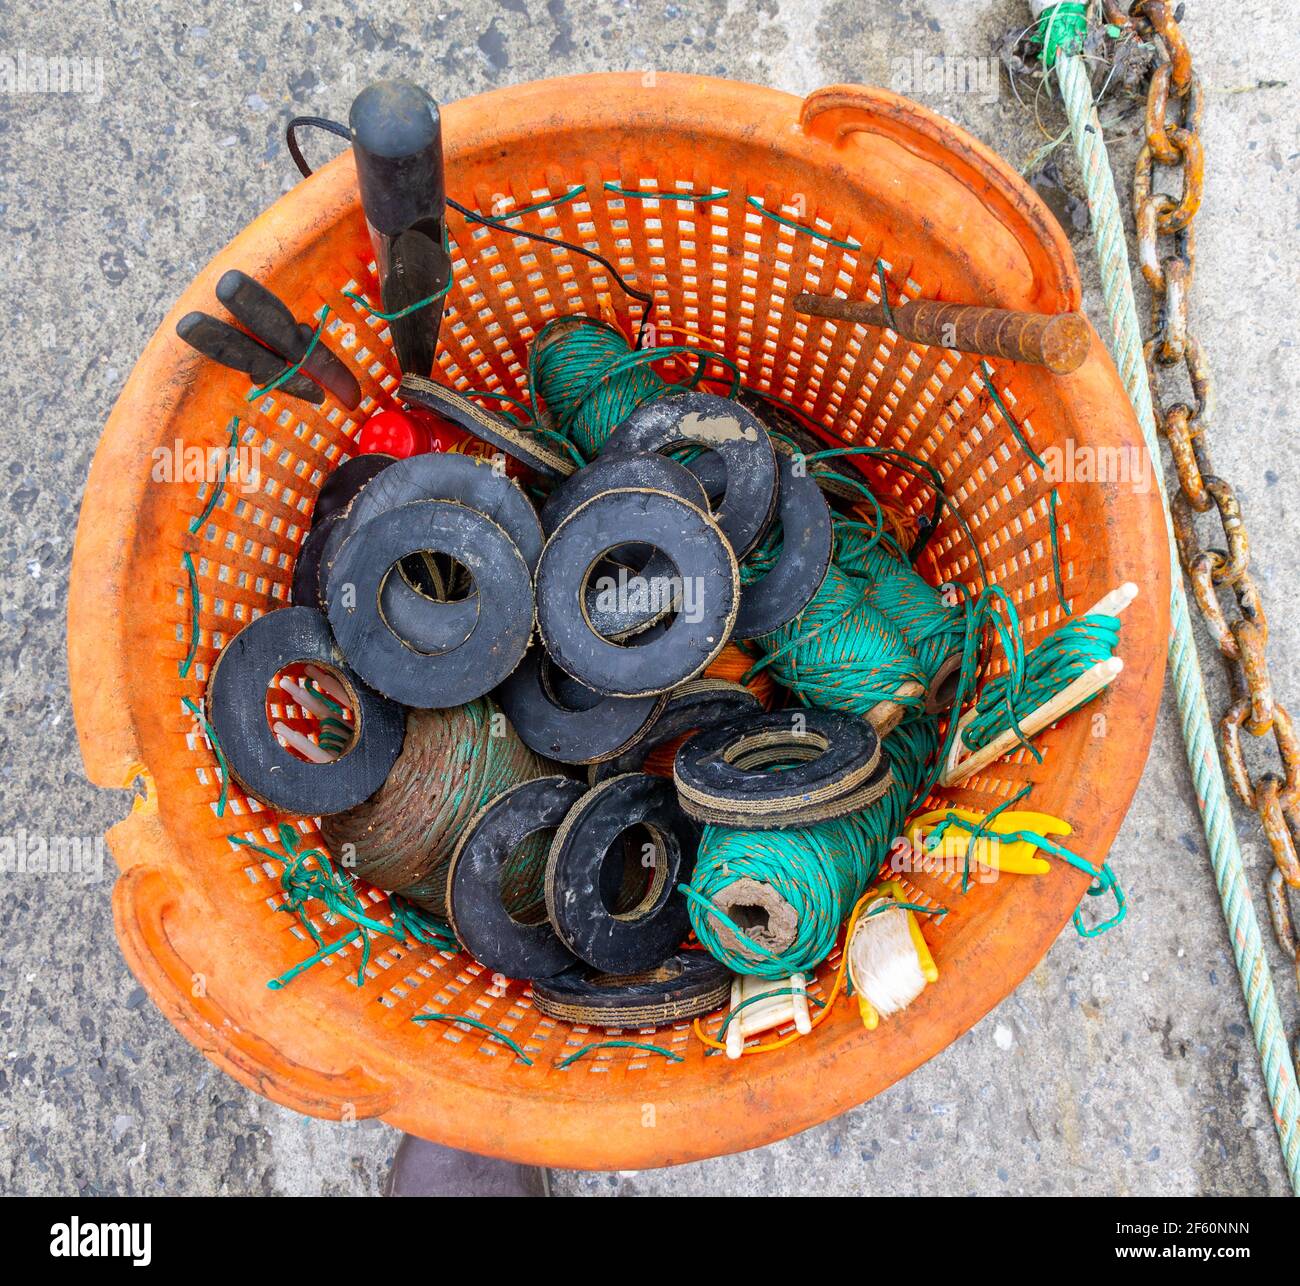 Kit de reparación de redes de arrastre en cesta naranja. Foto de stock